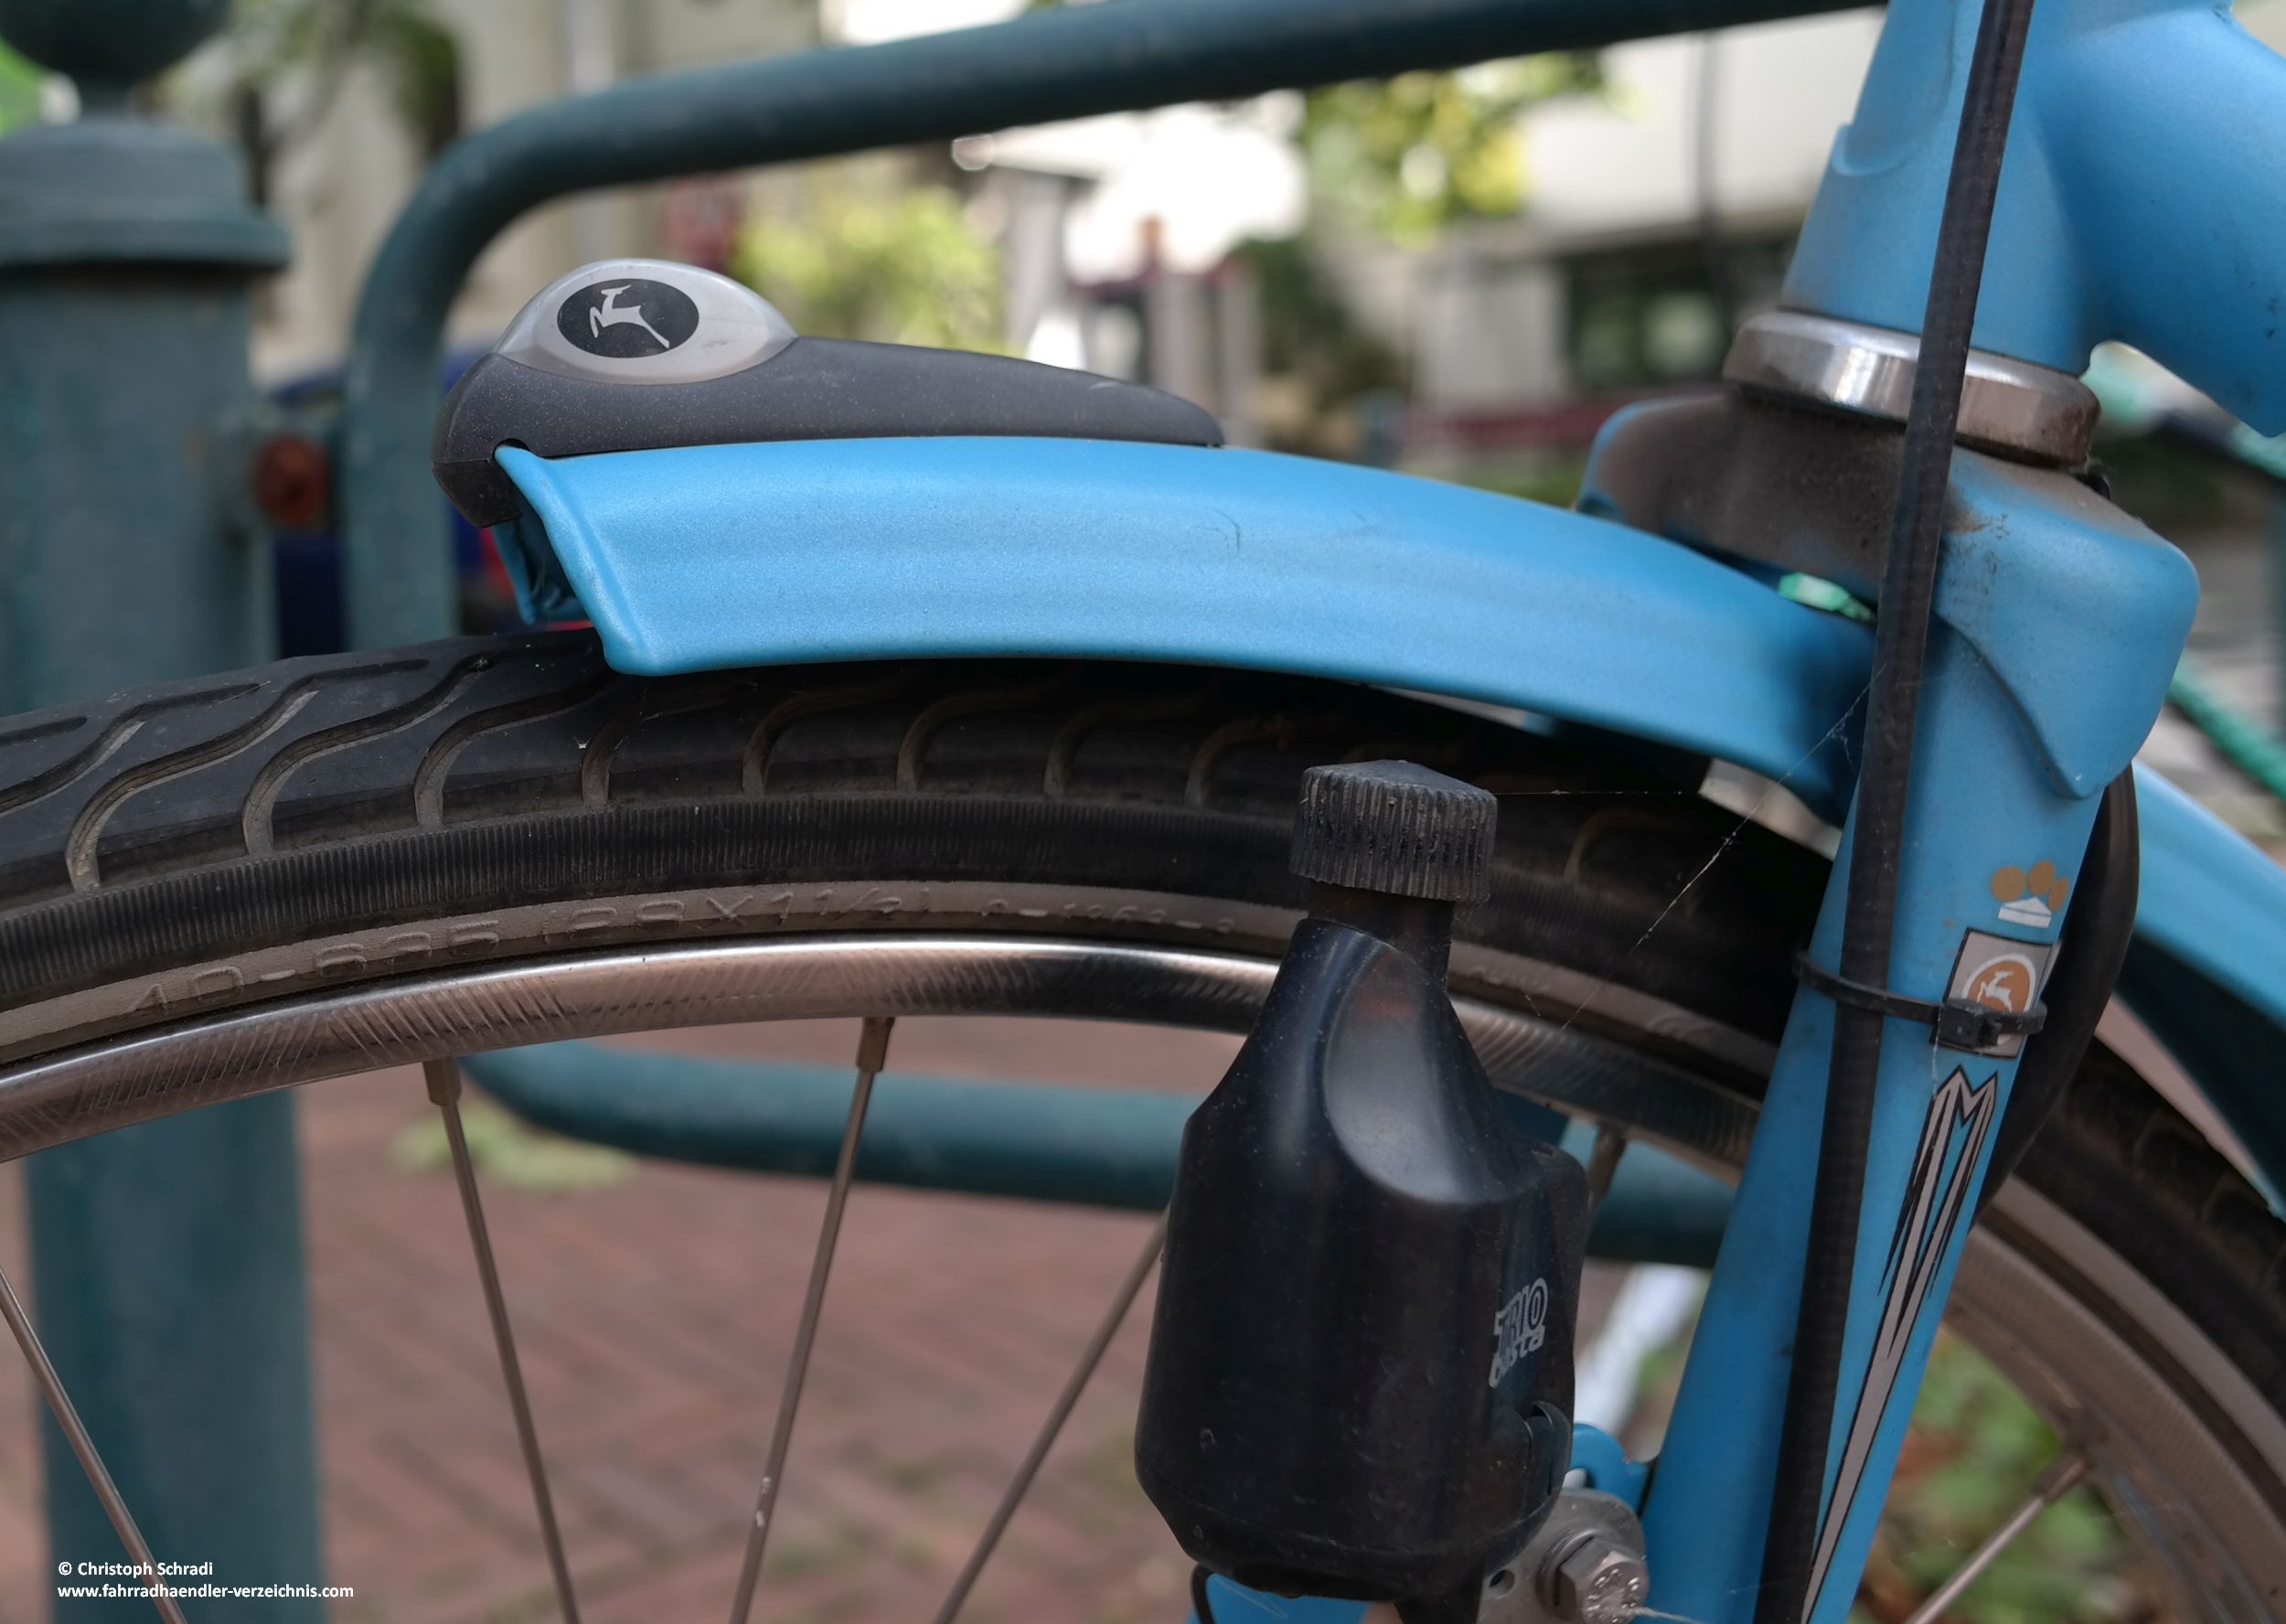 Ein Seitenläuferdynamo ist eine veralte Art am Fahrrad Strom zu Erzeugen um damit das Fahrradlicht zu betreiben. Hier wird durch Reibung an der Reifenwand Strom erzeugt